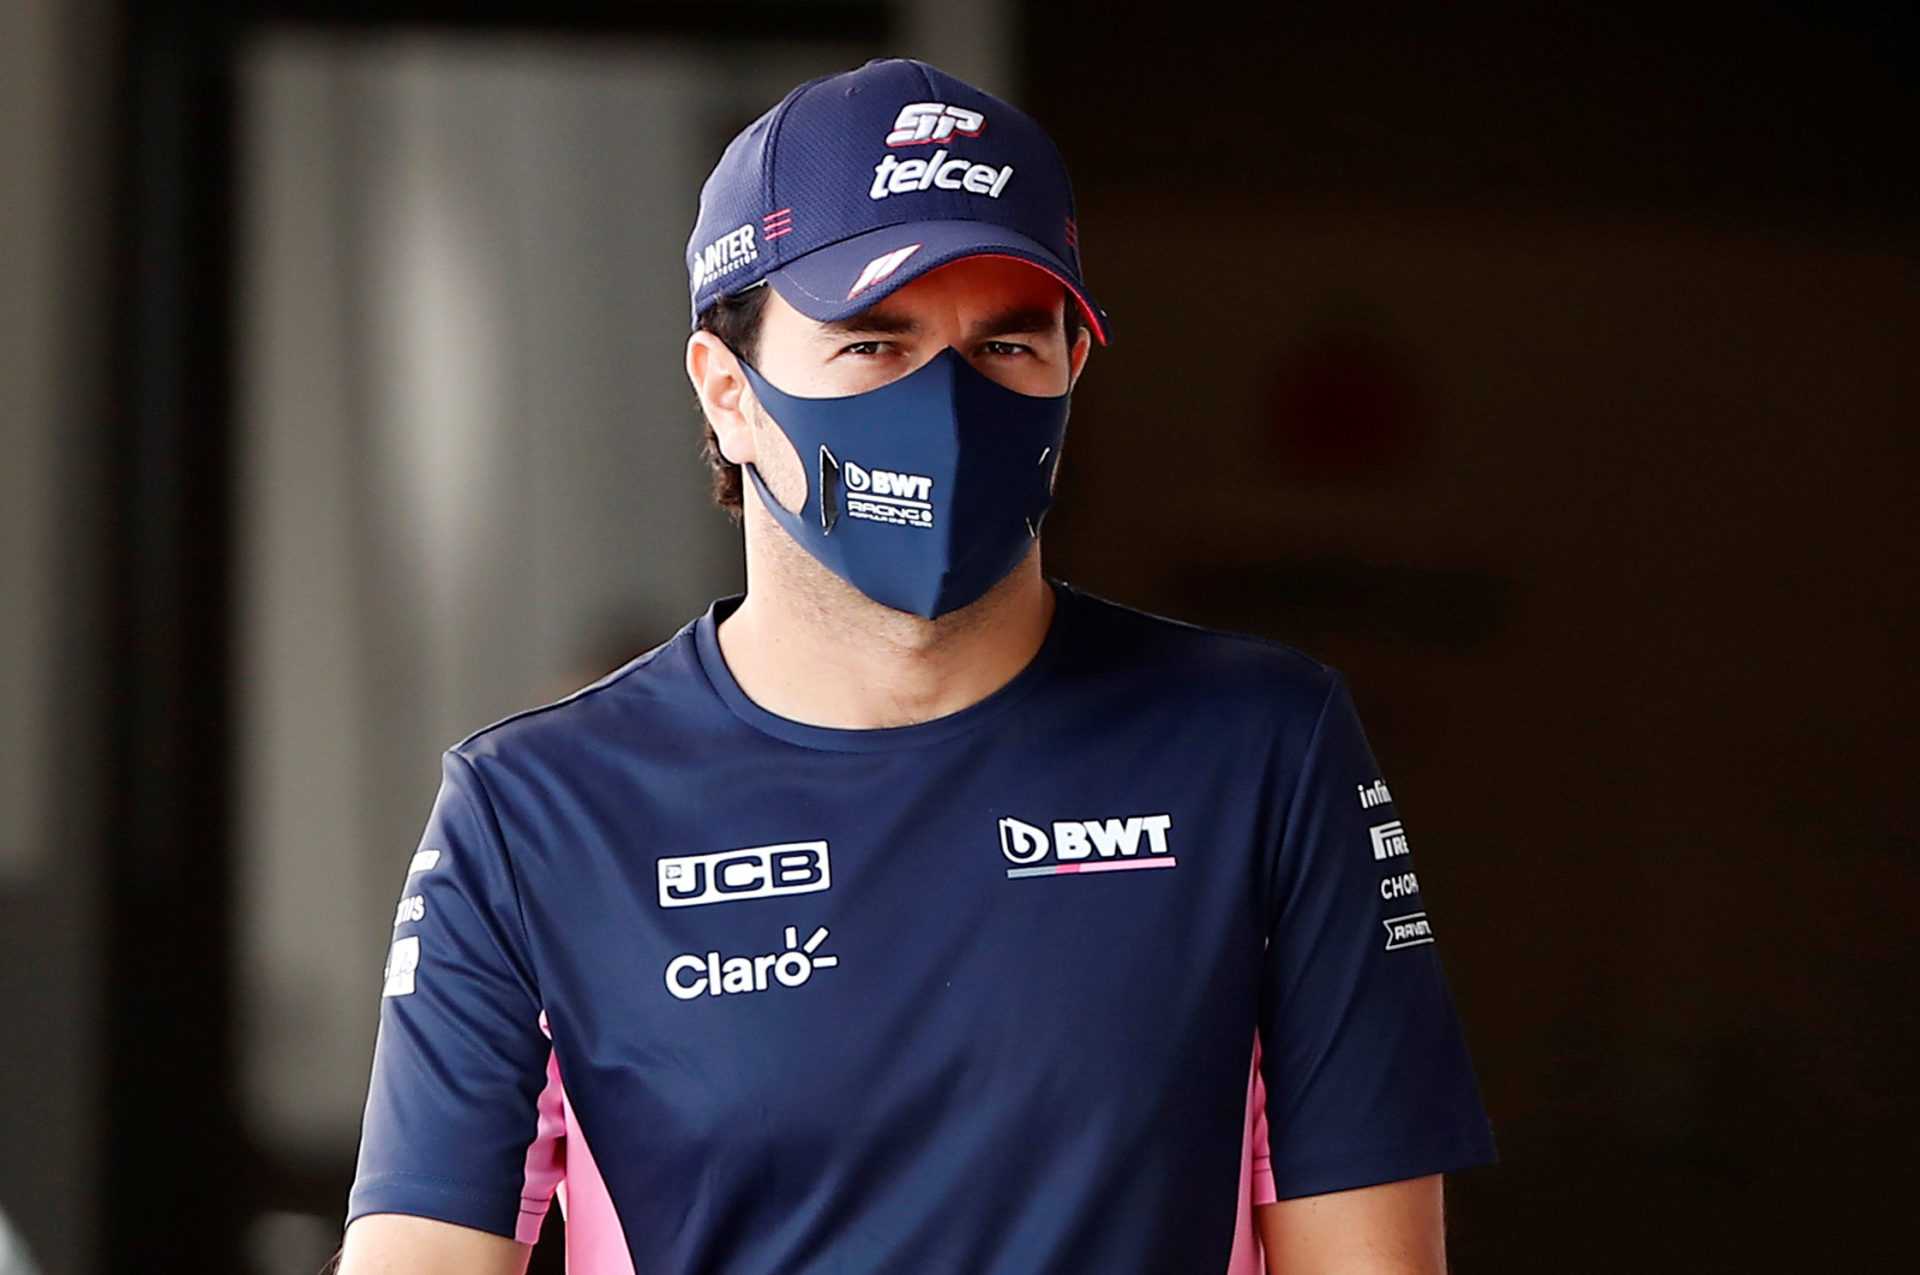 Après des semaines d'hostilités, Sergio Perez et Racing Point F1 ont mis le mauvais sang derrière